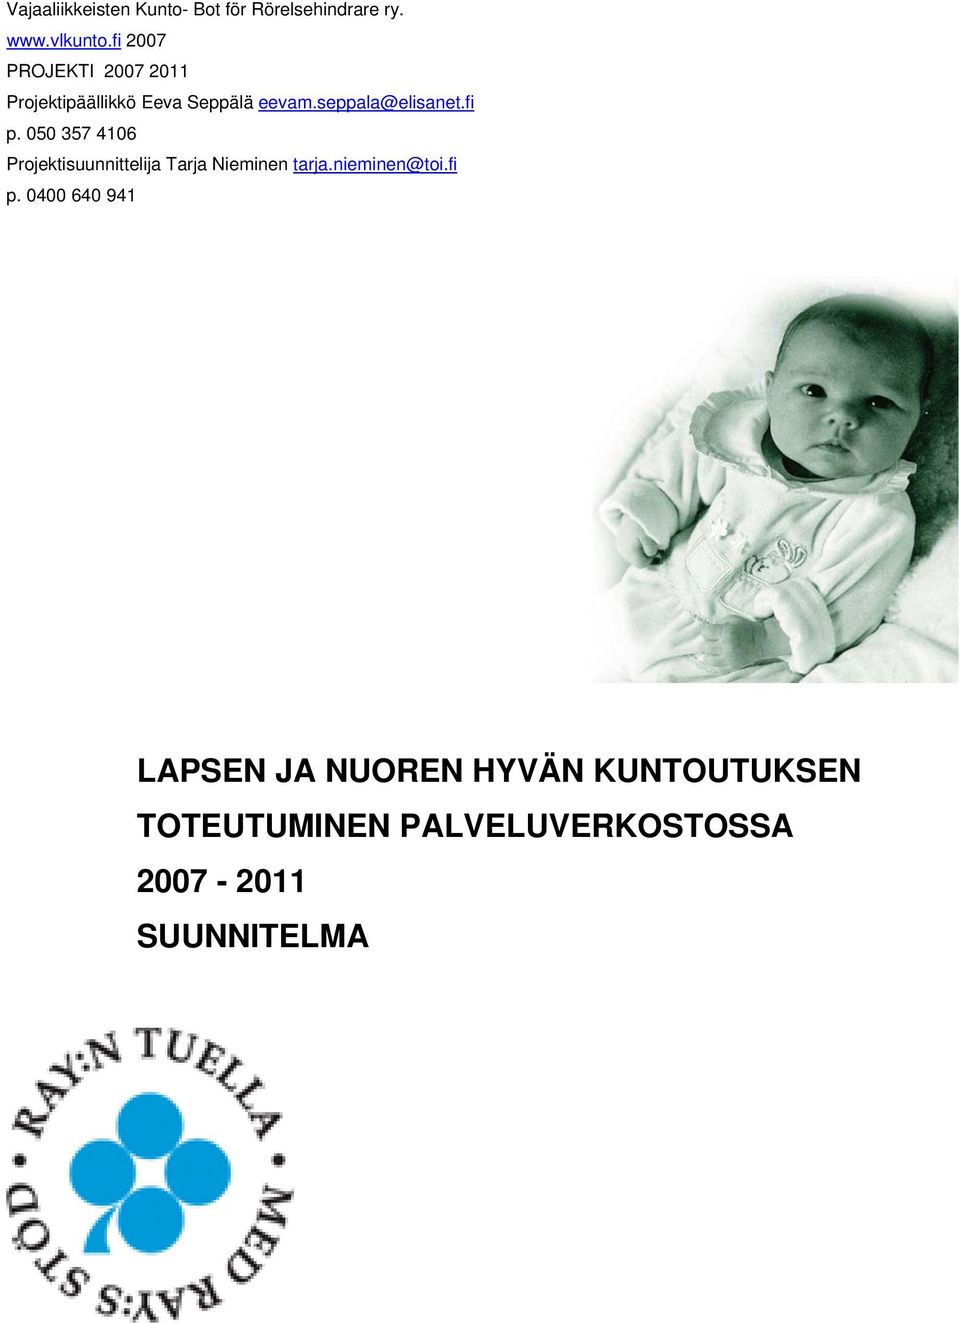 fi p. 050 357 4106 Projektisuunnittelija Tarja Nieminen tarja.nieminen@toi.fi p.